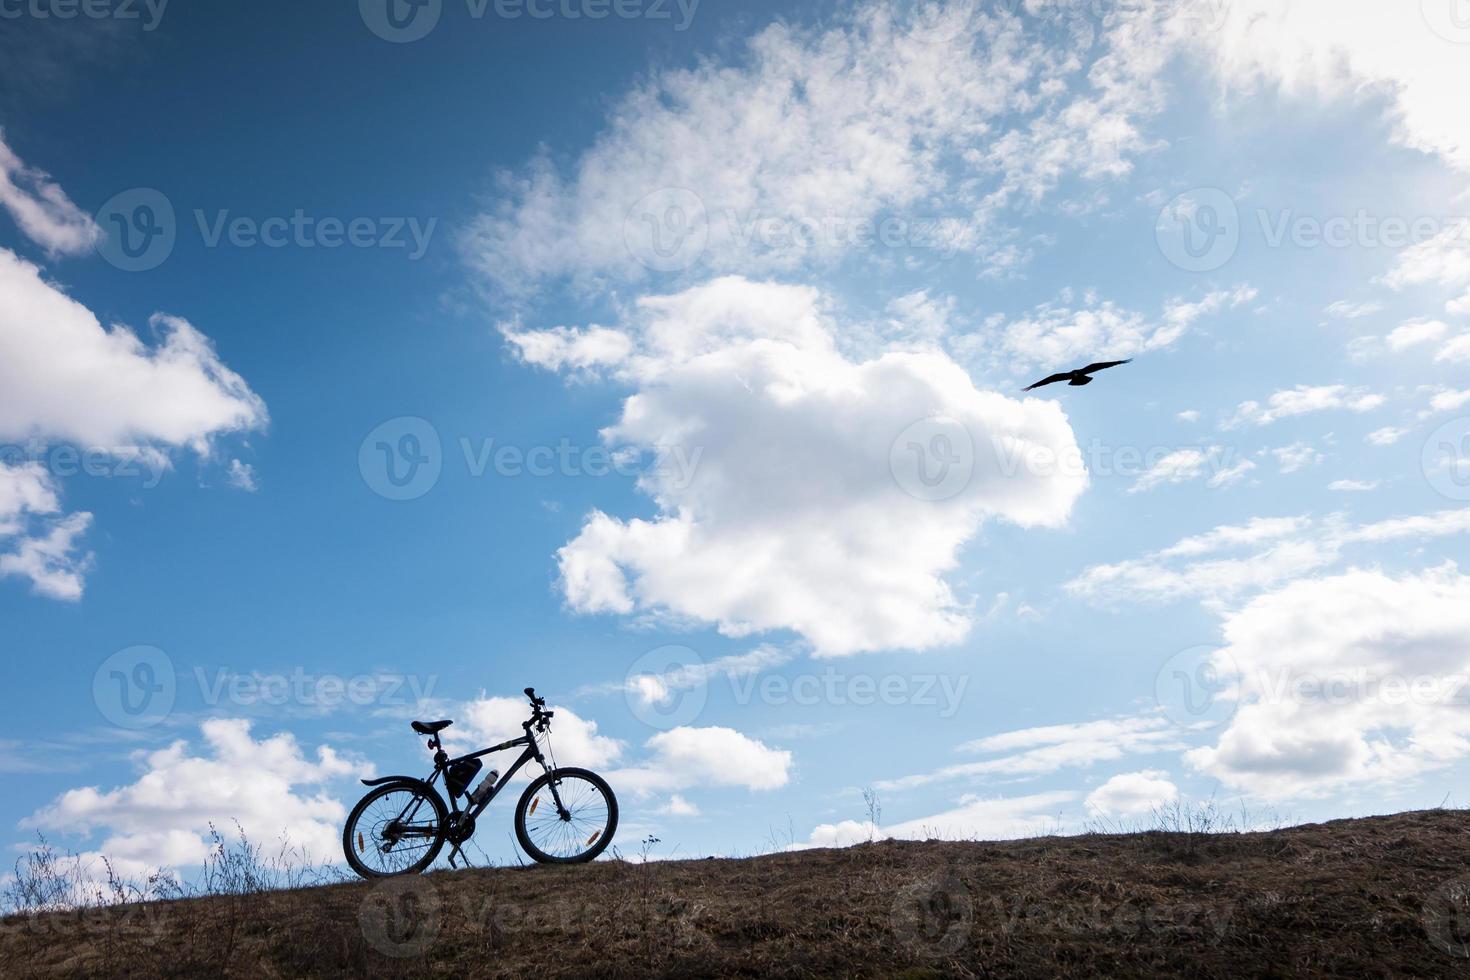 silhueta de bicicleta no céu azul com nuvens. símbolo de independência e liberdade com pássaro voando foto